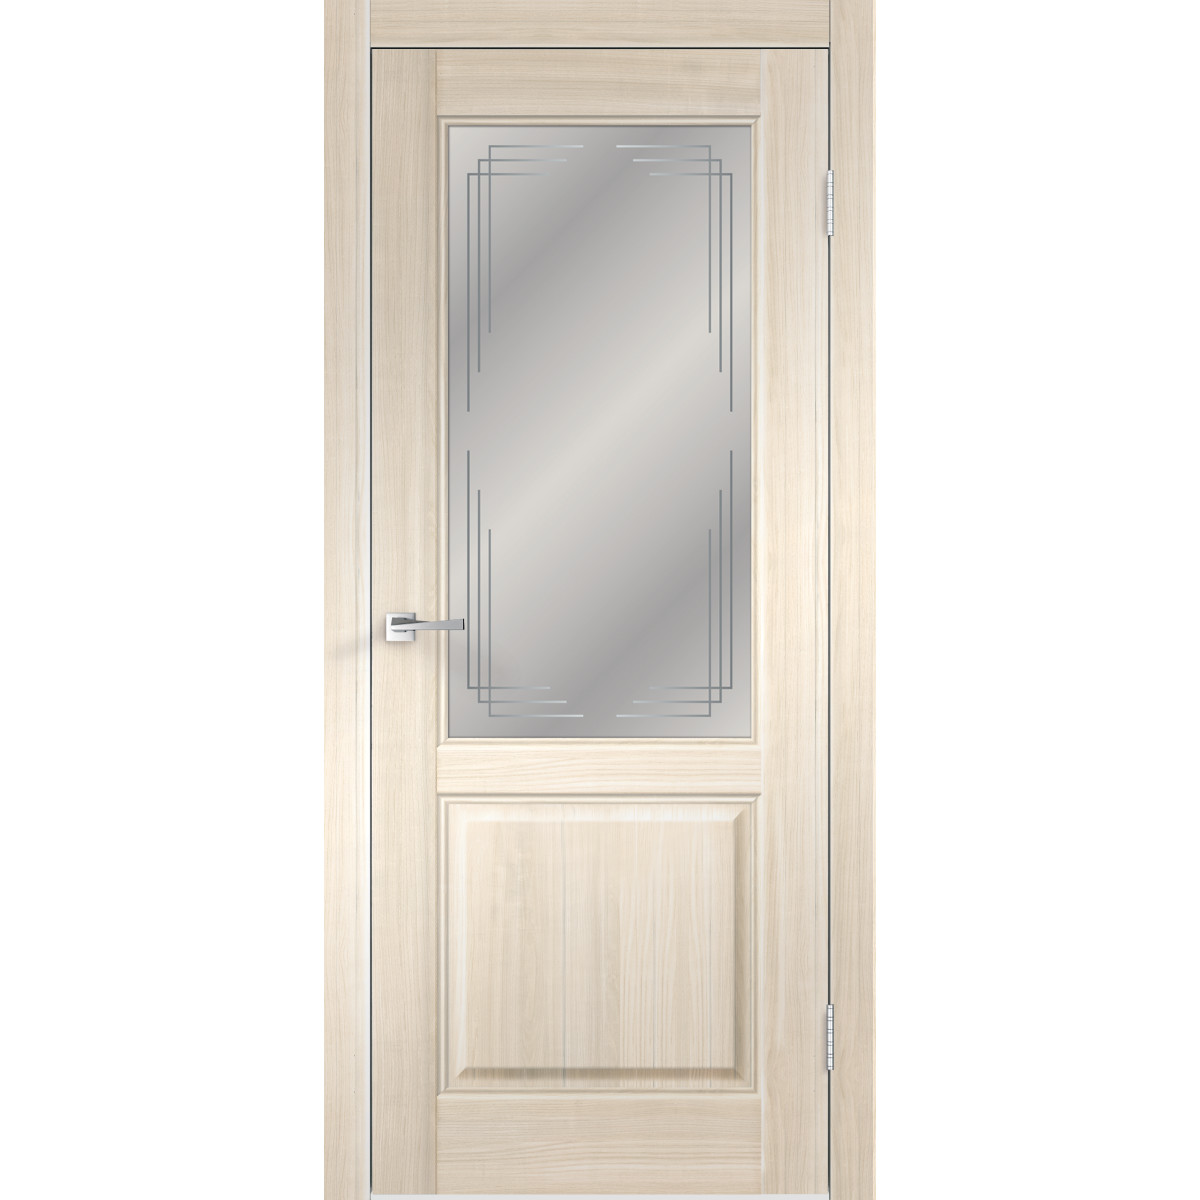 Дверь межкомнатная остеклённая Вилла 2Р 60х200 см с фурнитурой, ПВХ, цвет японский ясень